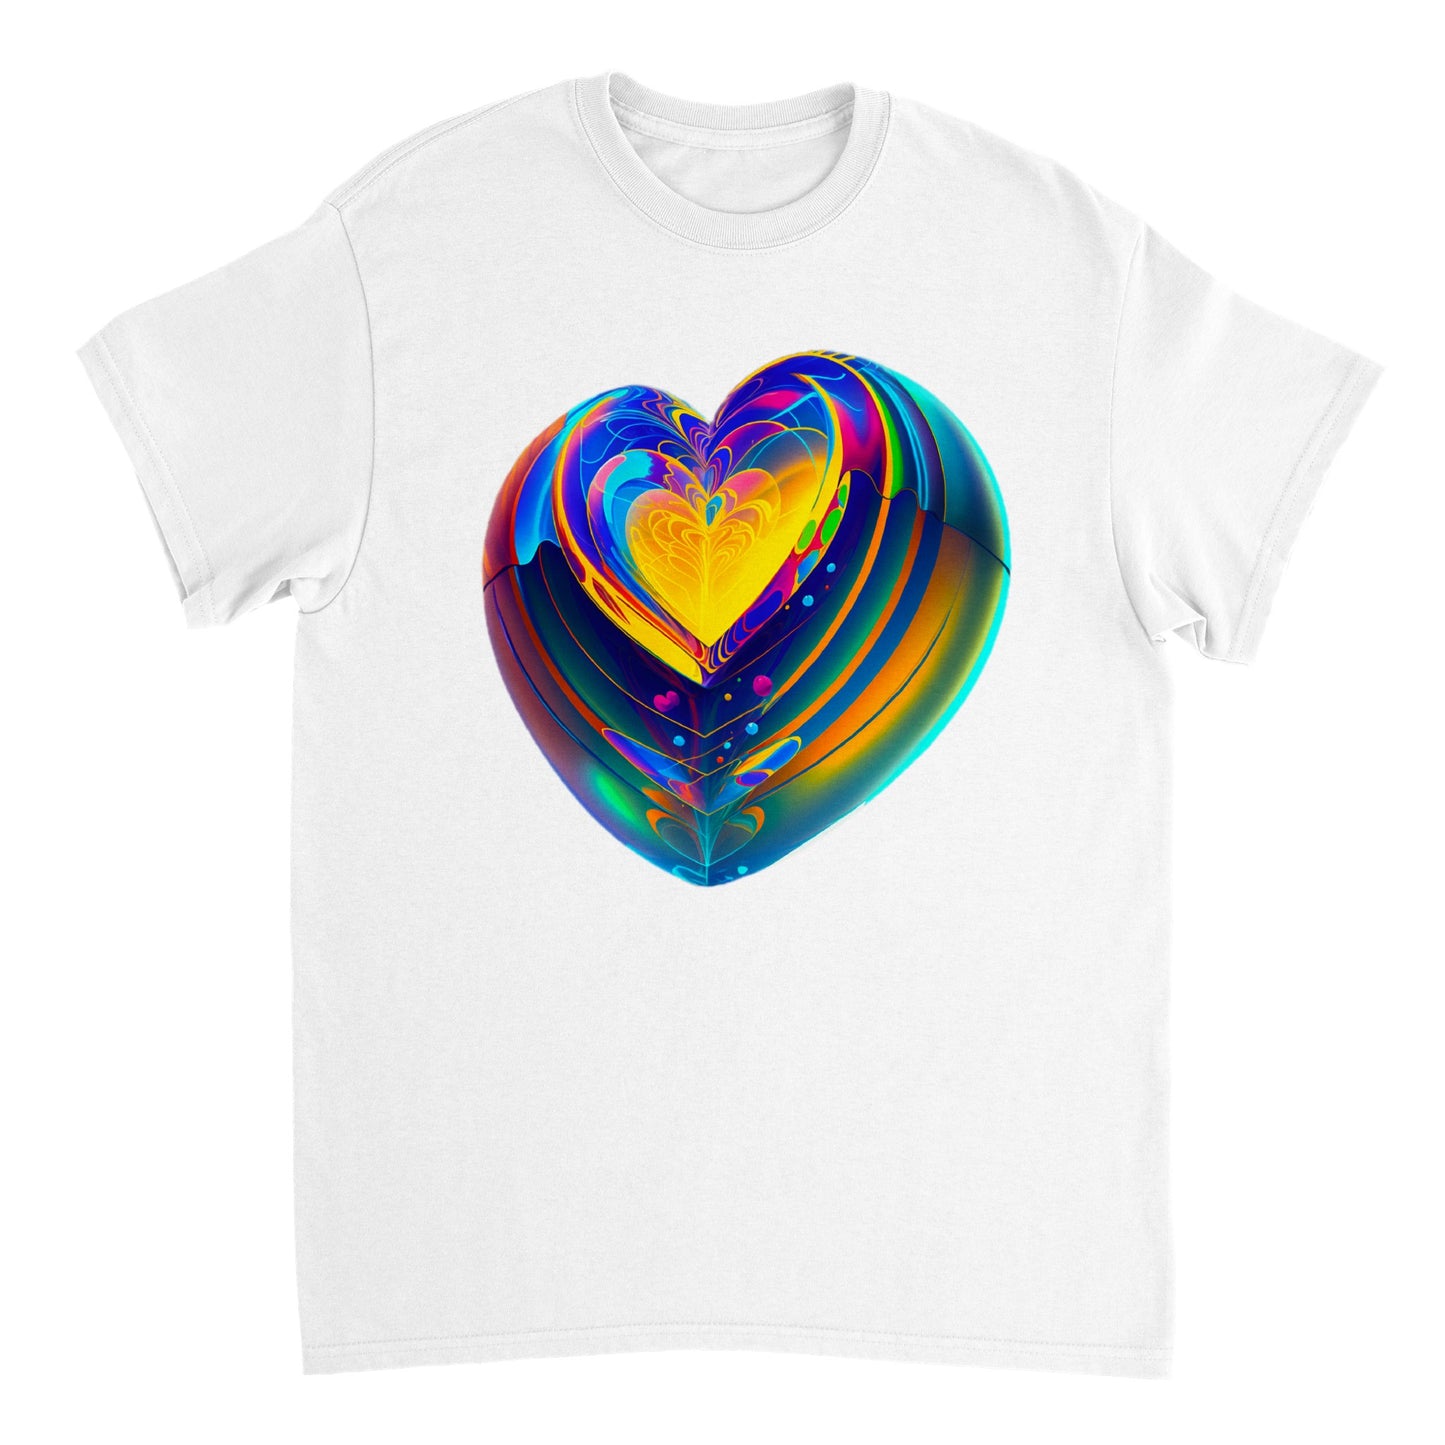 Love Heart - Heavyweight Unisex Crewneck T-shirt 41